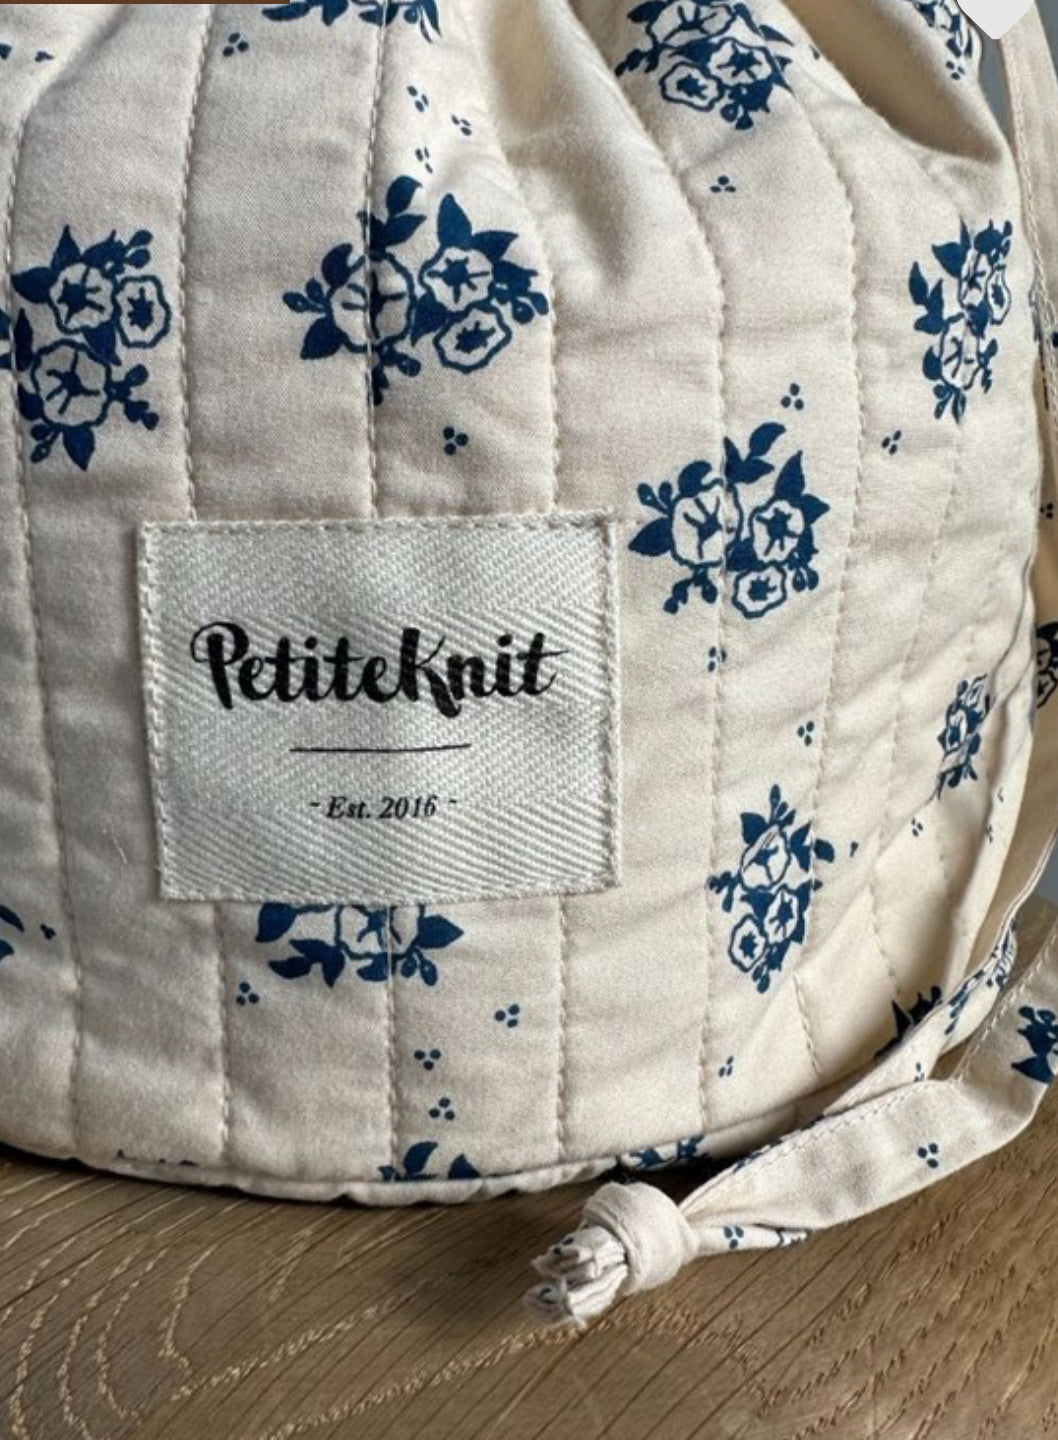 PetiteKnit Get Your Knit together bag